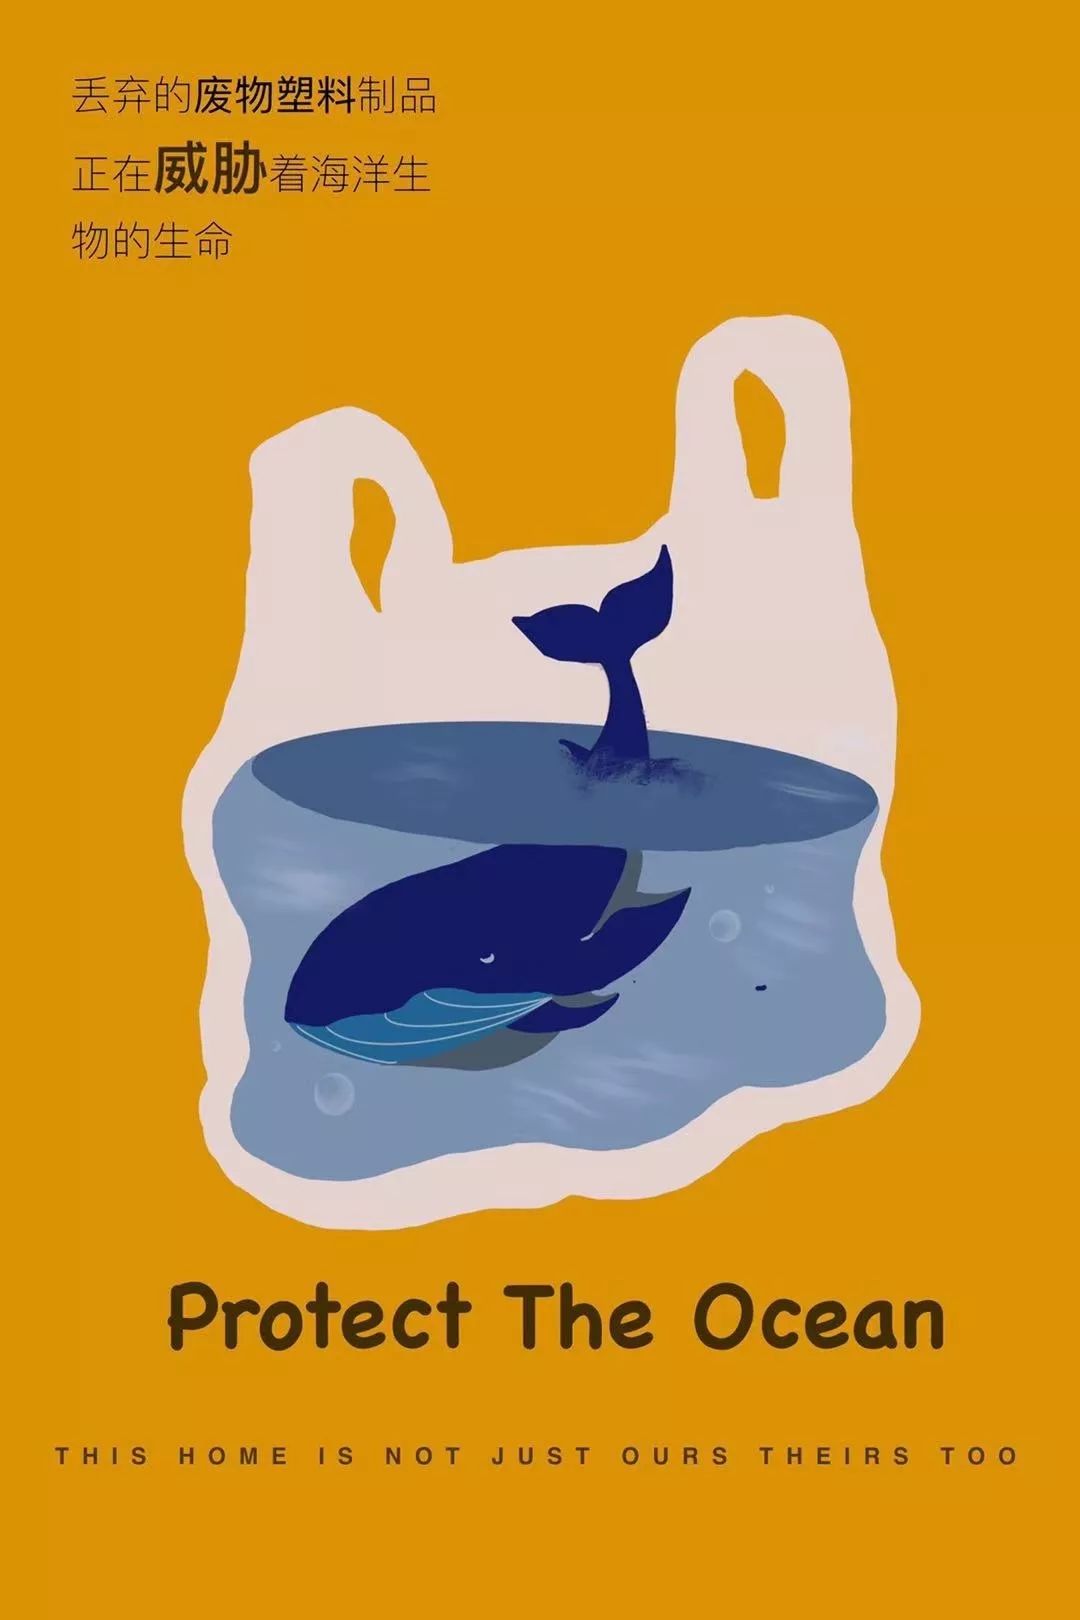 孟思含 美术学院 曹乾 美术学院 丁楚 电脑手绘 《保护海洋》  美术